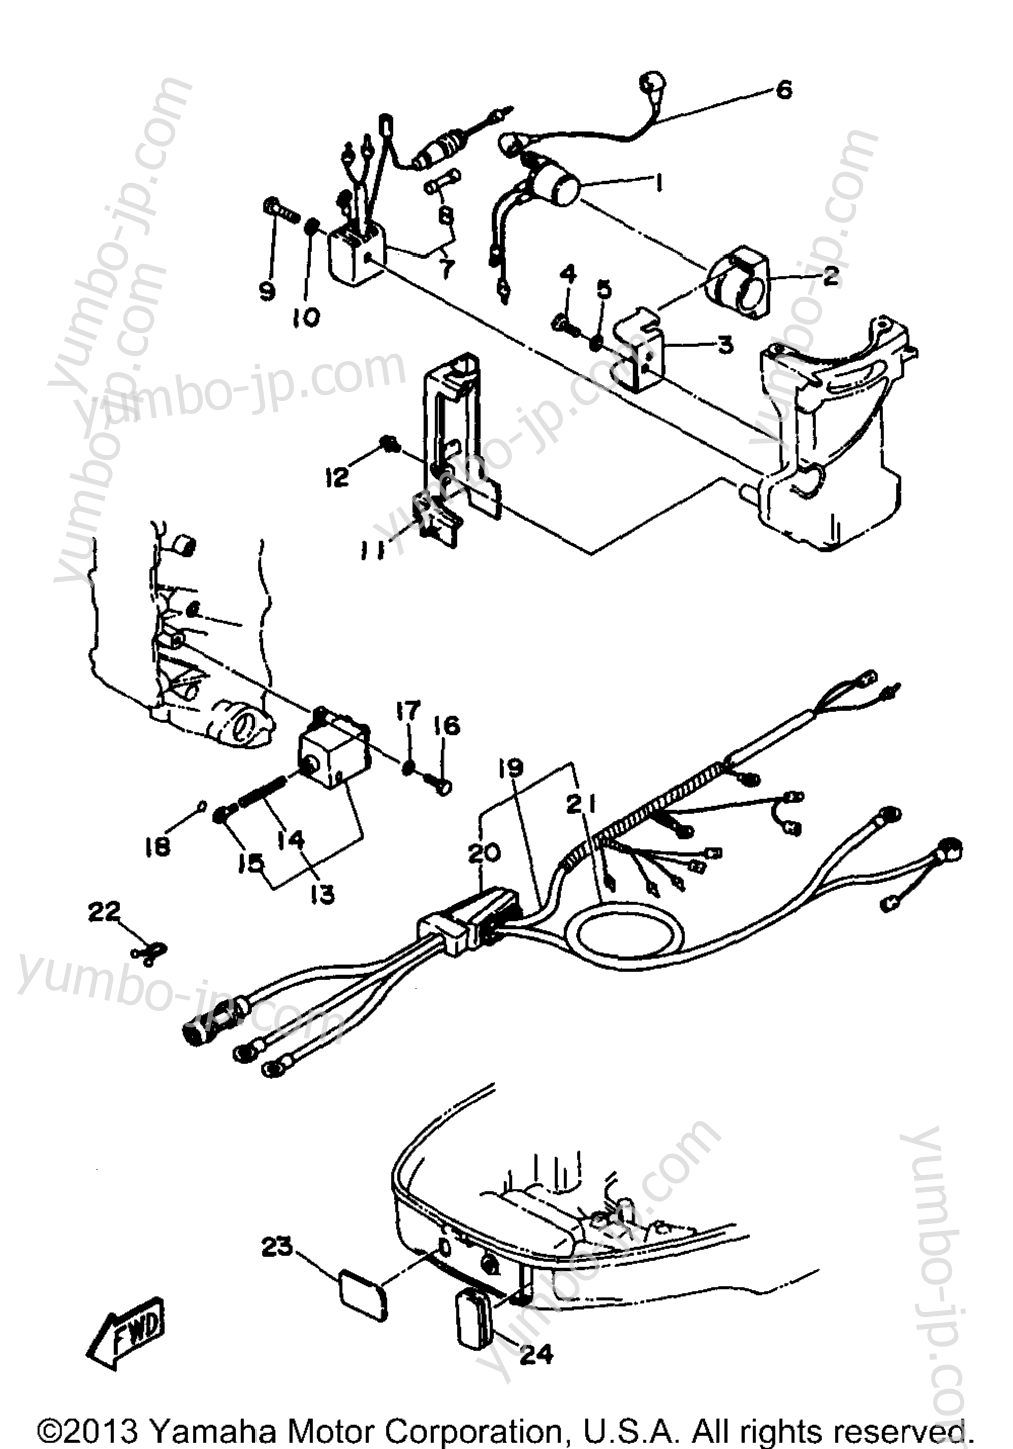 Electric Parts 2 (30Er) для лодочных моторов YAMAHA 30ELHV 1997 г.